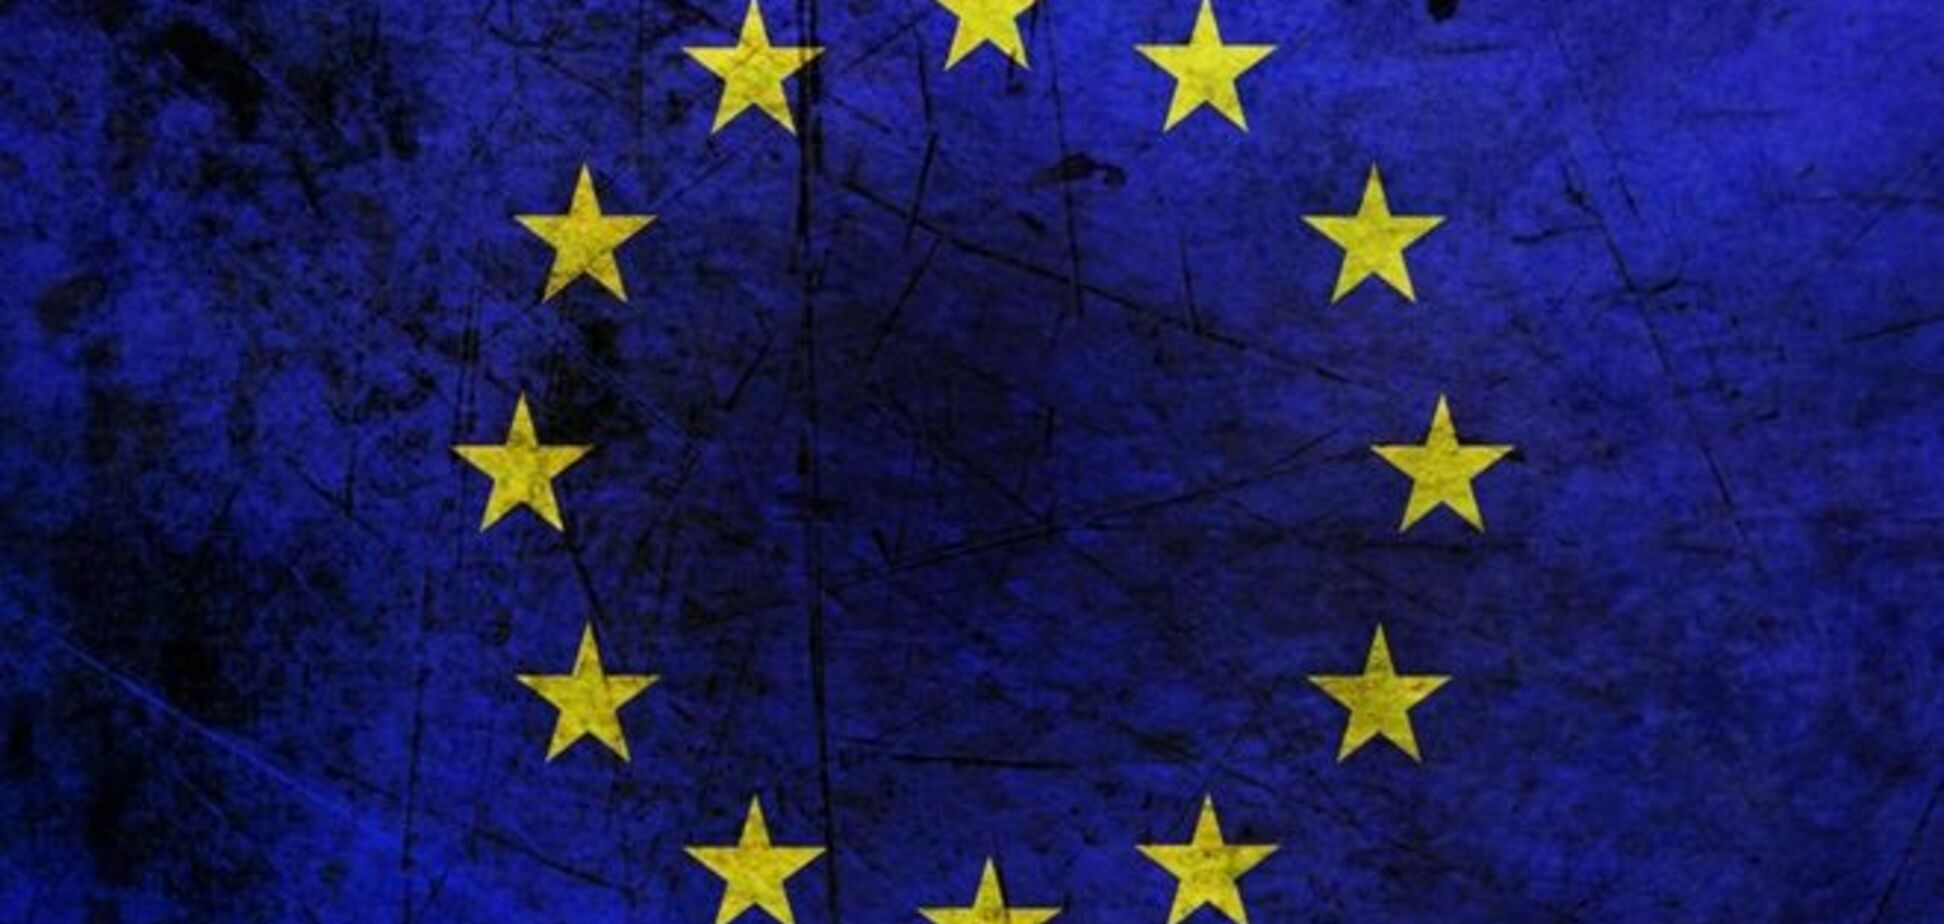 Сім країн ЄС підтримують вторгнення в Сирію без мандата ООН